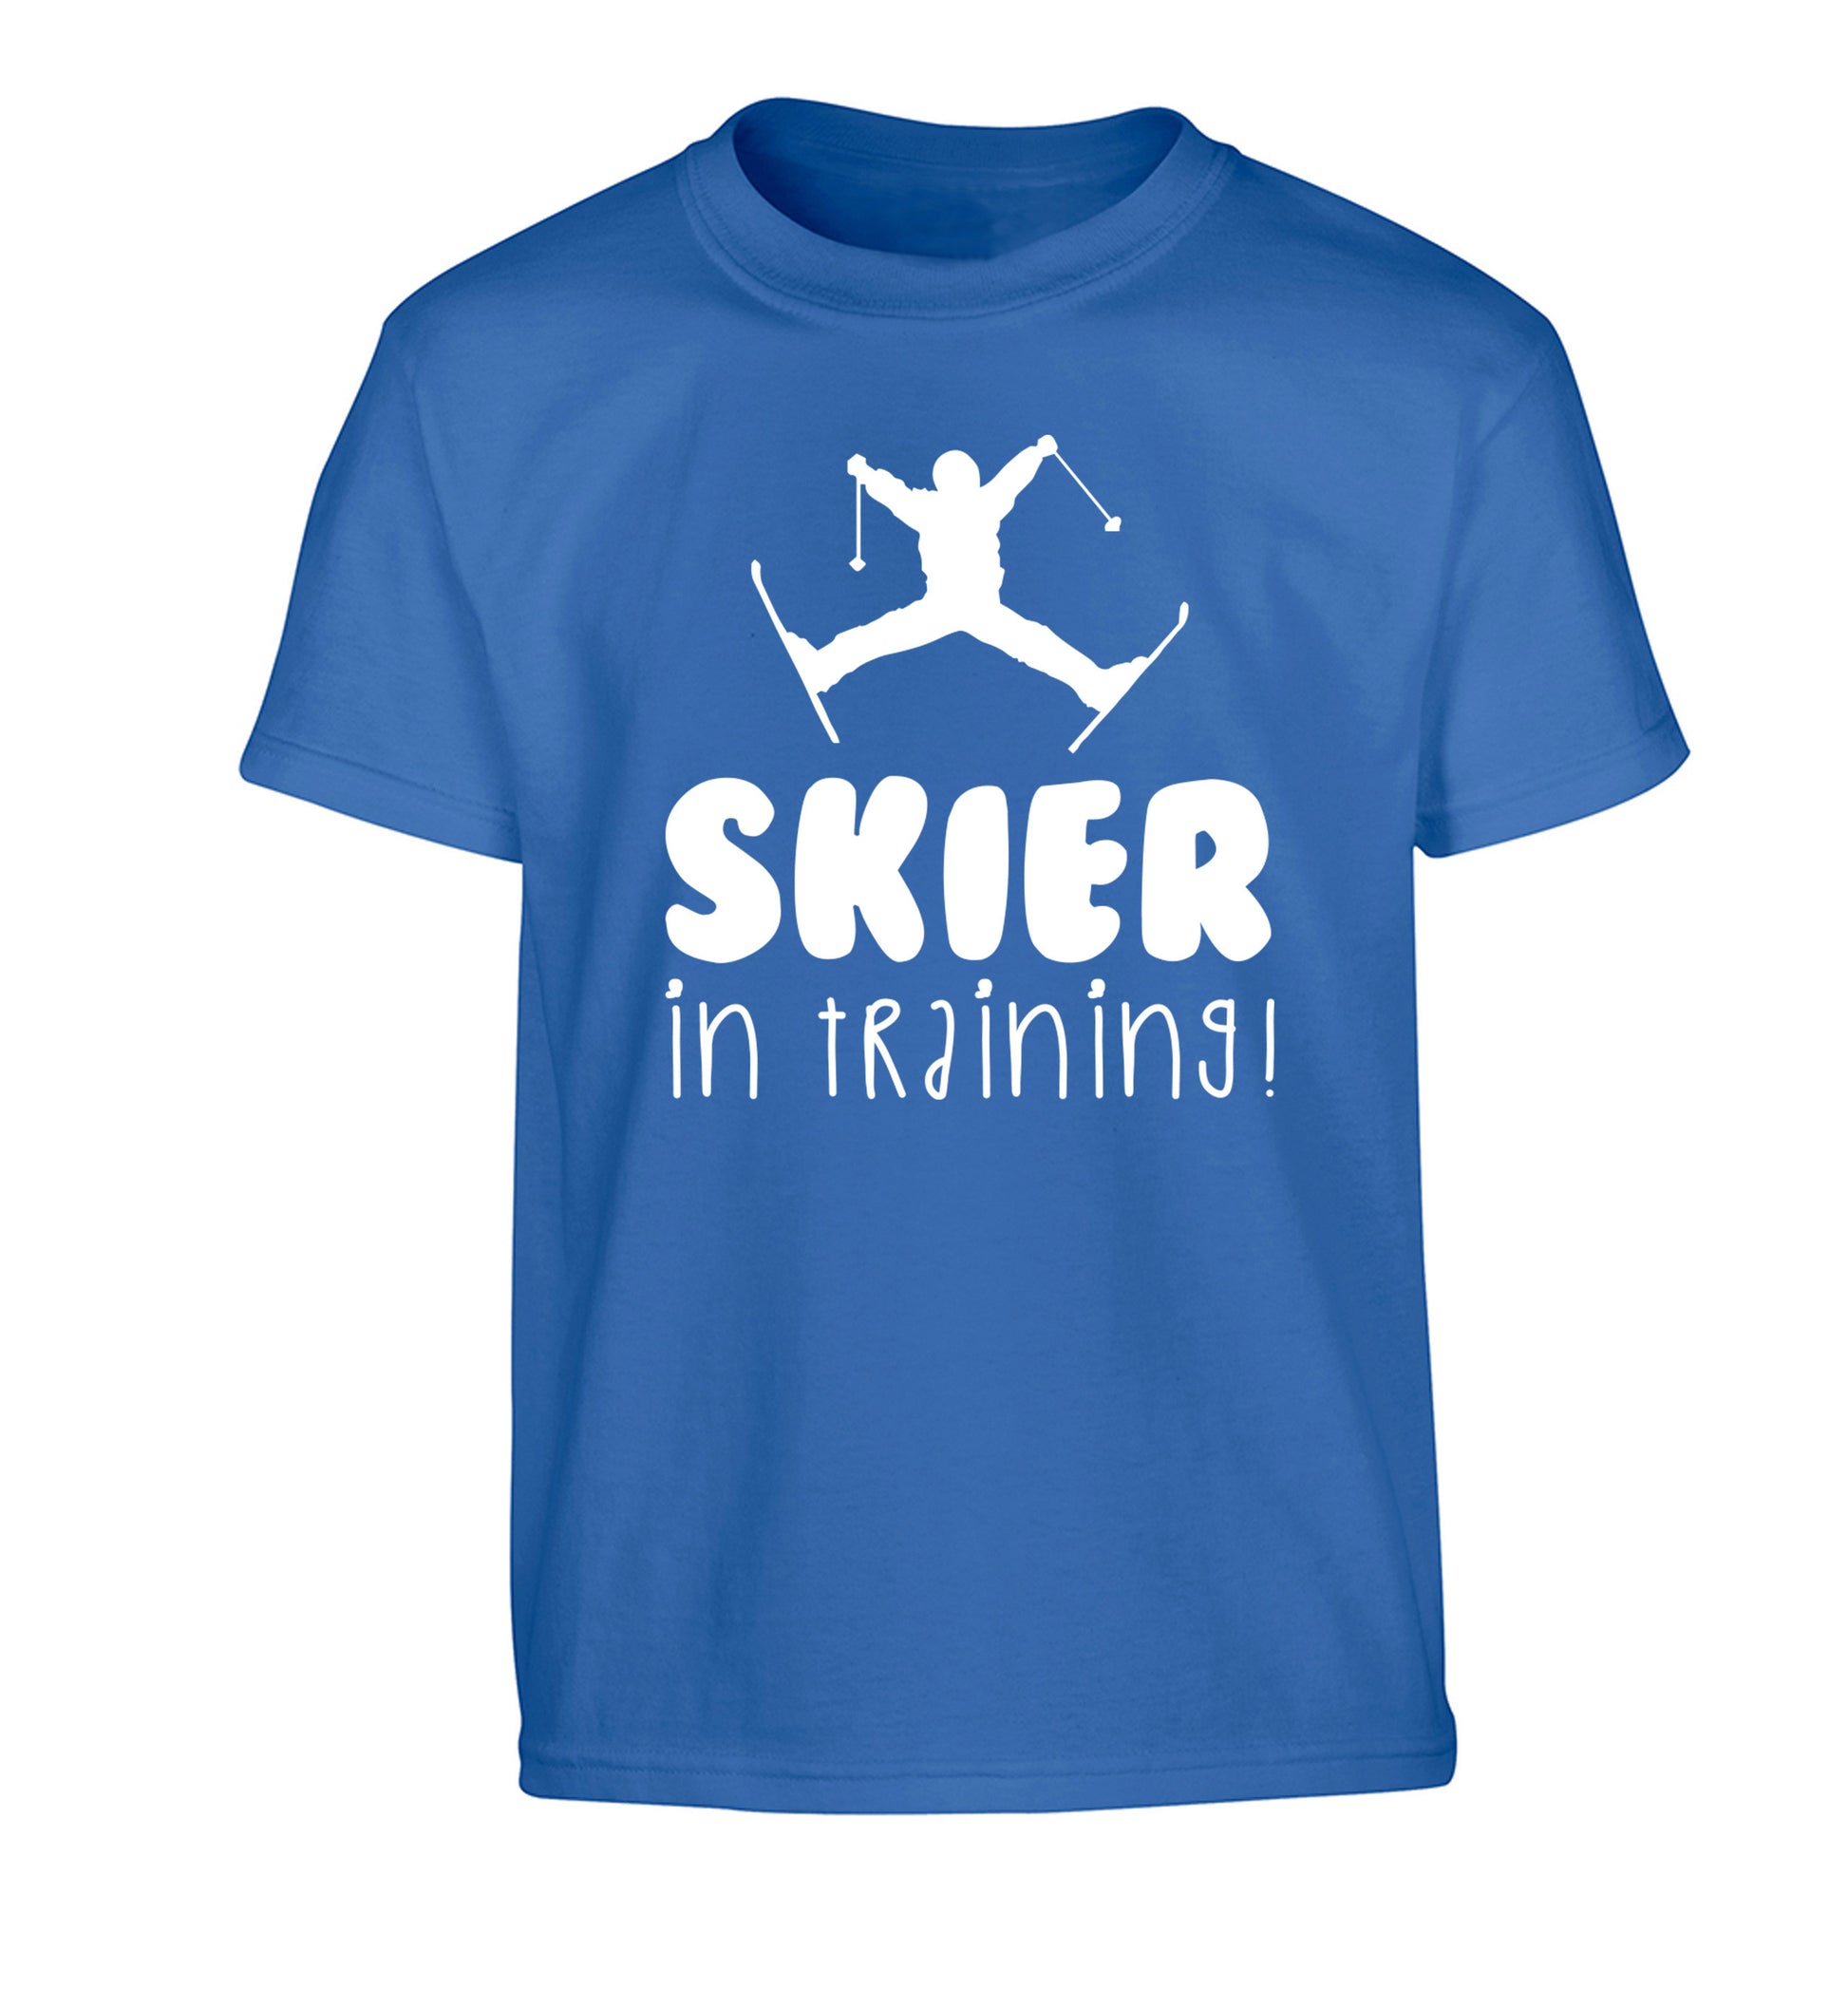 Skier in training Children's blue Tshirt 12-14 Years